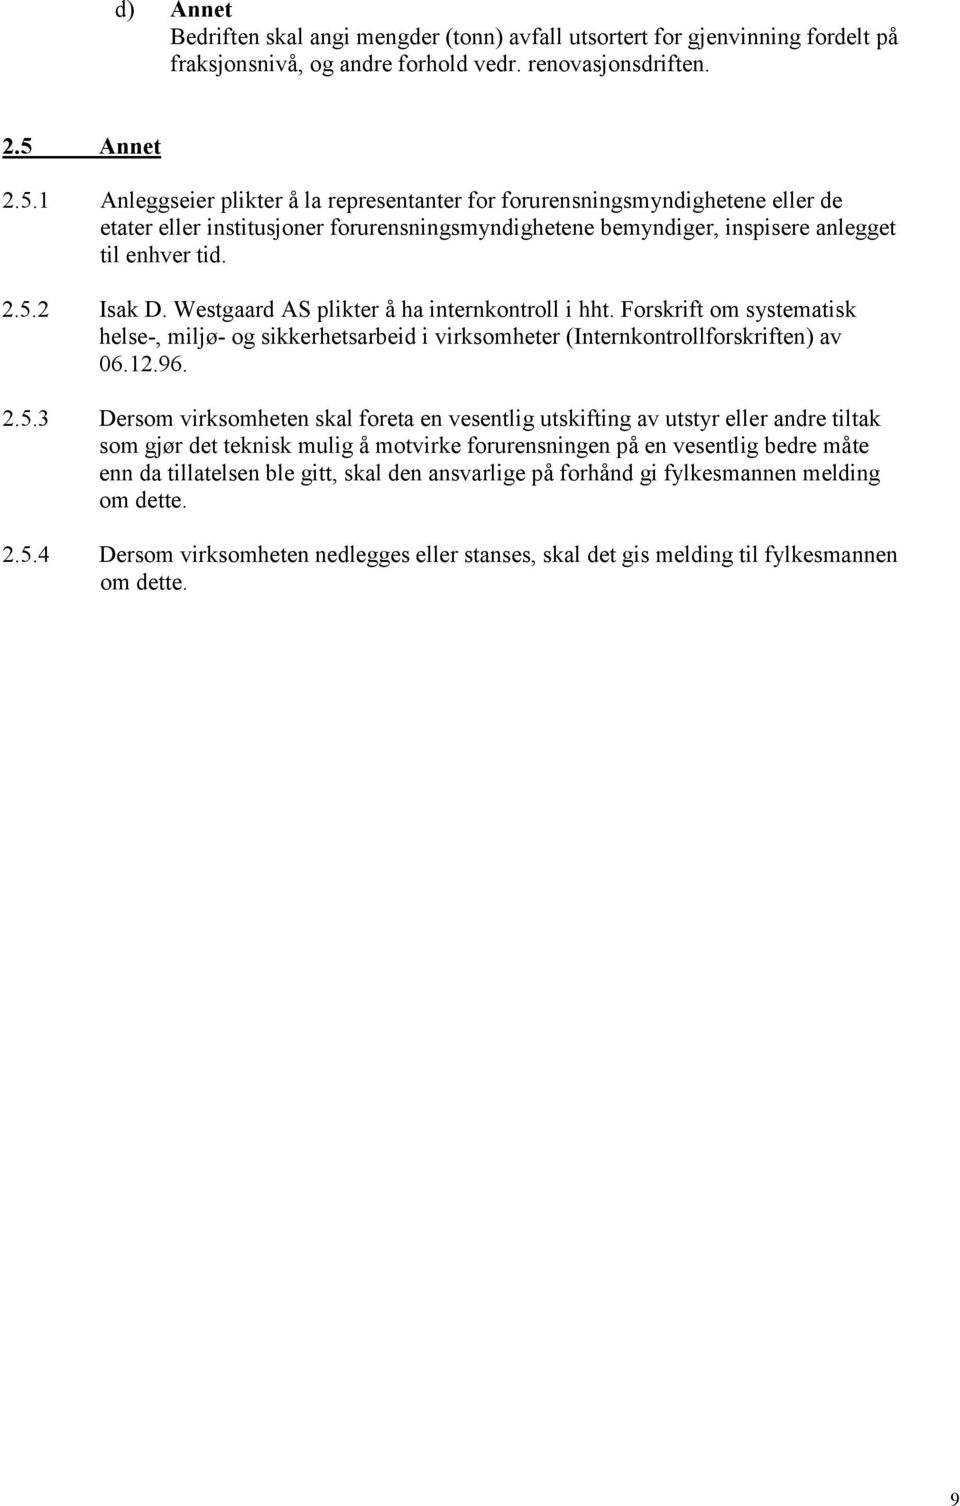 Westgaard AS plikter å ha internkontroll i hht. Forskrift om systematisk helse-, miljø- og sikkerhetsarbeid i virksomheter (Internkontrollforskriften) av 06.12.96. 2.5.